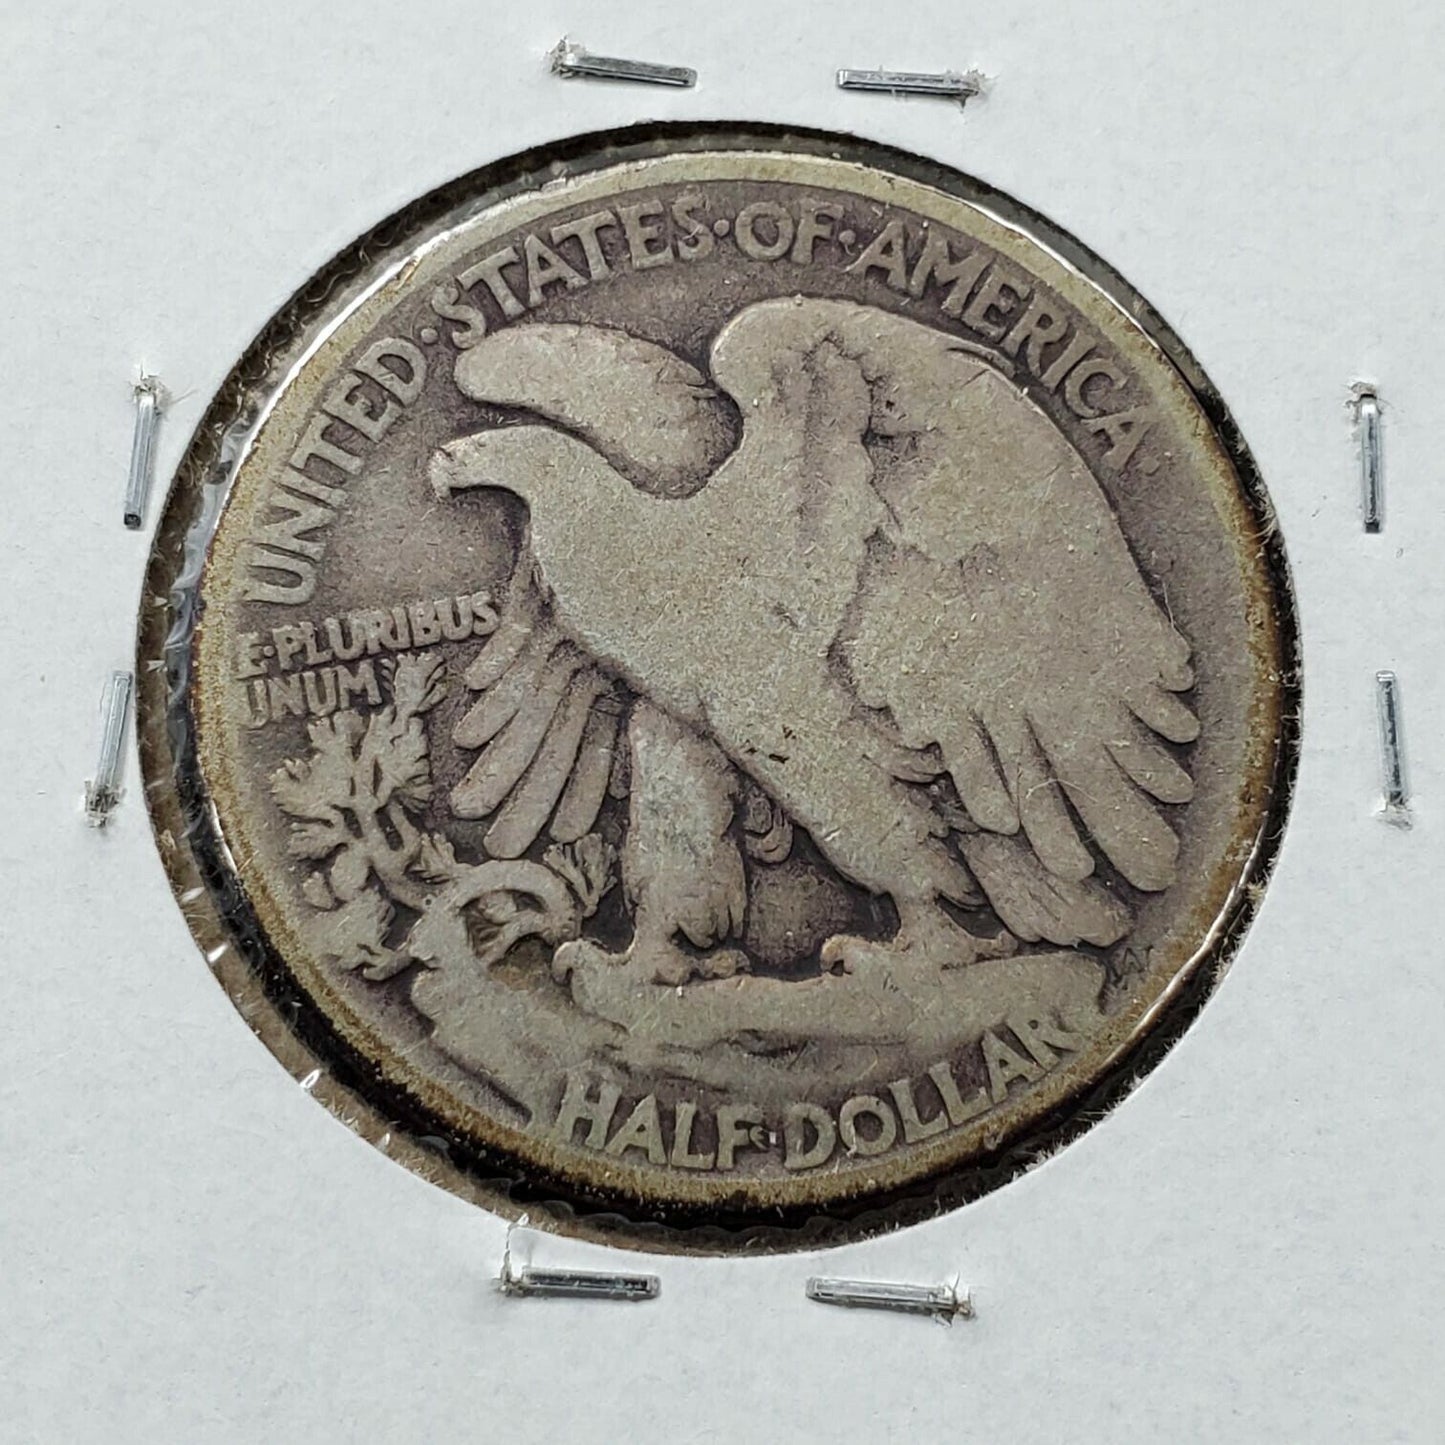 1920 P Walking Liberty Silver Half Dollar Coin Choice Good Circulated